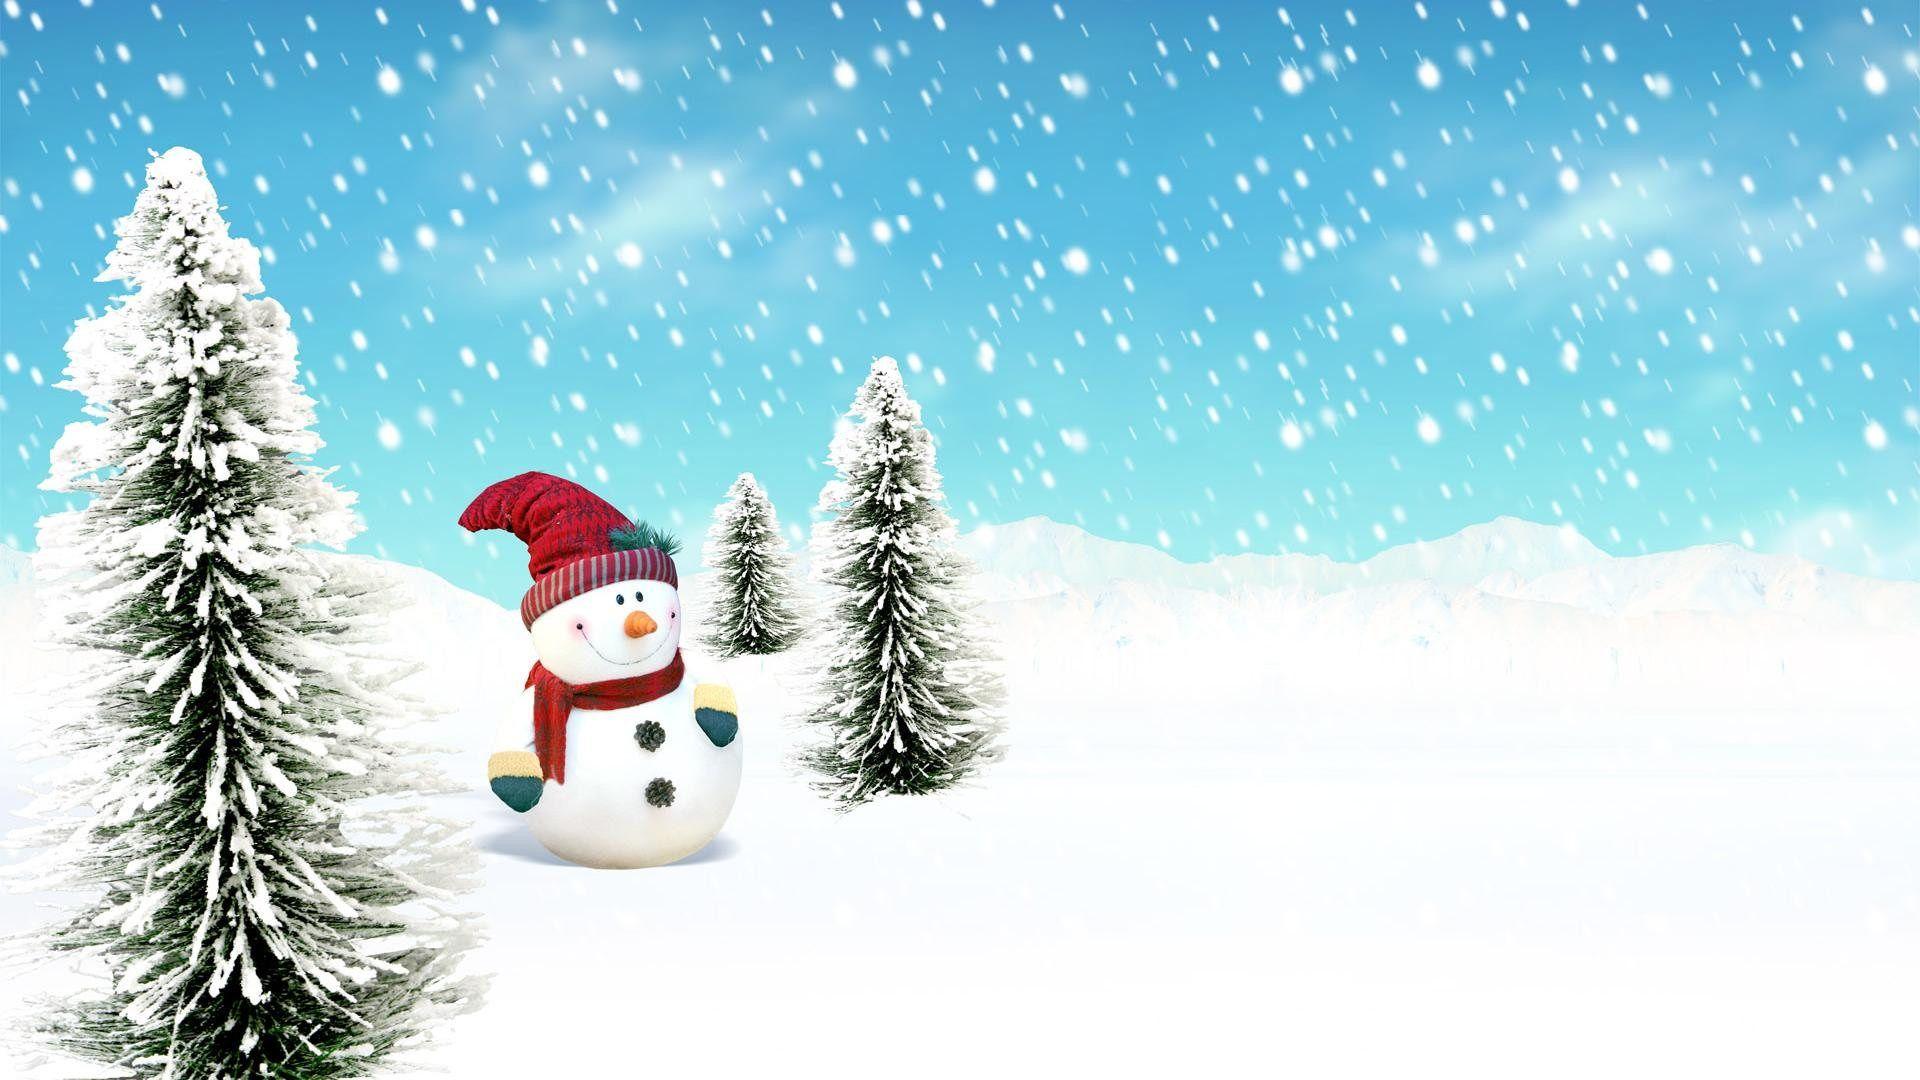 Christmas Snowman Wallpaper 2015 12 11